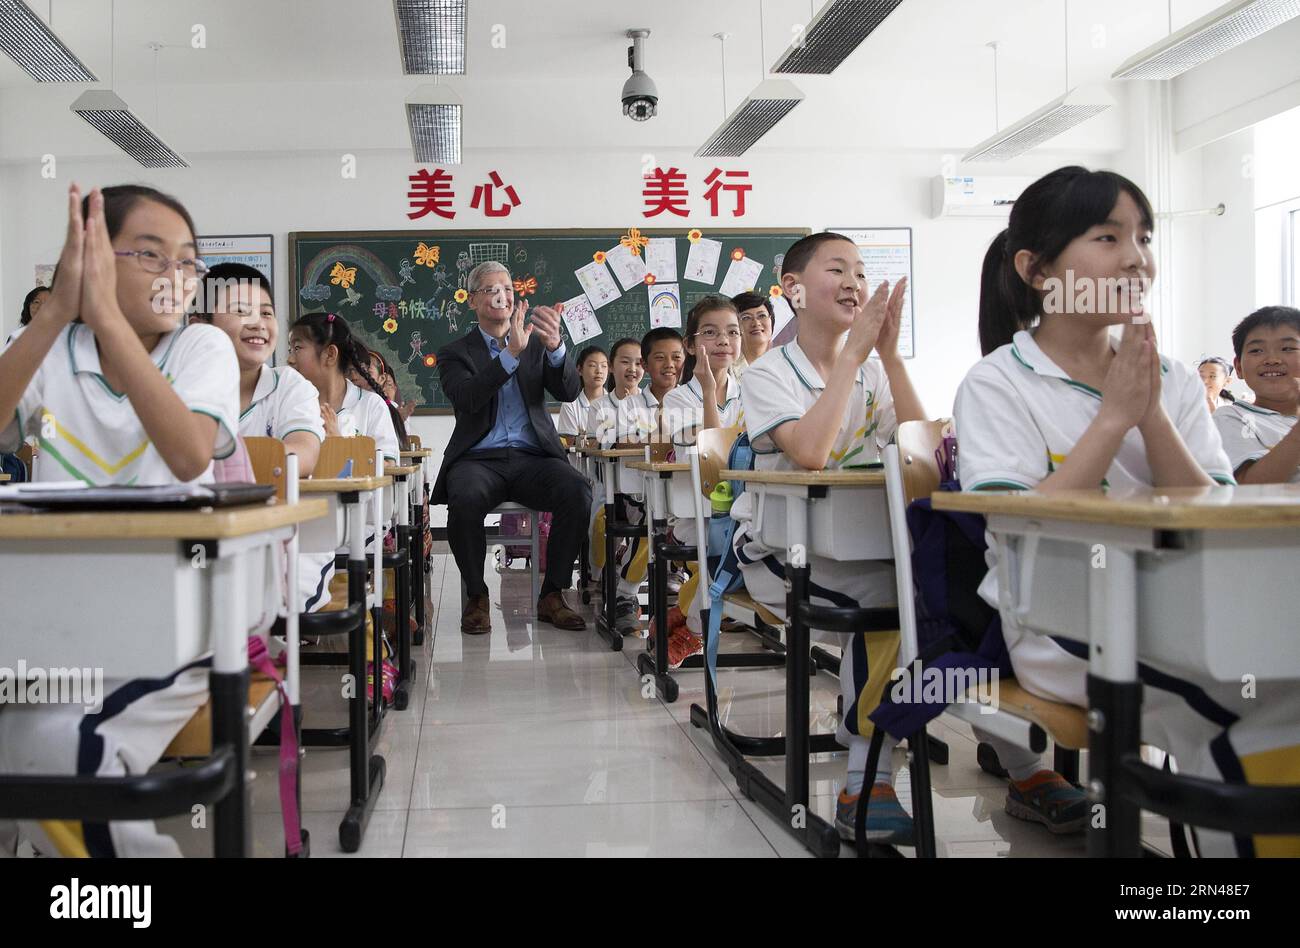 (150512) -- PECHINO, 12 maggio 2015 -- Tim Cook(C), CEO di Apple Inc., partecipa a una lezione orale di inglese presso la Primary School Attached to Communication University of China a Pechino, capitale della Cina, 12 maggio 2015. Tim Cook ha visitato la scuola primaria collegata alla Communication University of China martedì. ) (Yxb) CHINA-BEIJING-APPLE CEO-PRIMARY SCHOOL-VISIT(CN) LixMing PUBLICATIONxNOTxINxCHN 150512 Pechino 12 maggio 2015 Tim Cook C CEO di Apple Inc partecipa alla lezione orale di inglese PRESSO la Primary School Attached to Communication University of China in Beijing Capital of China 12 maggio 2015 Tim Cook V Foto Stock